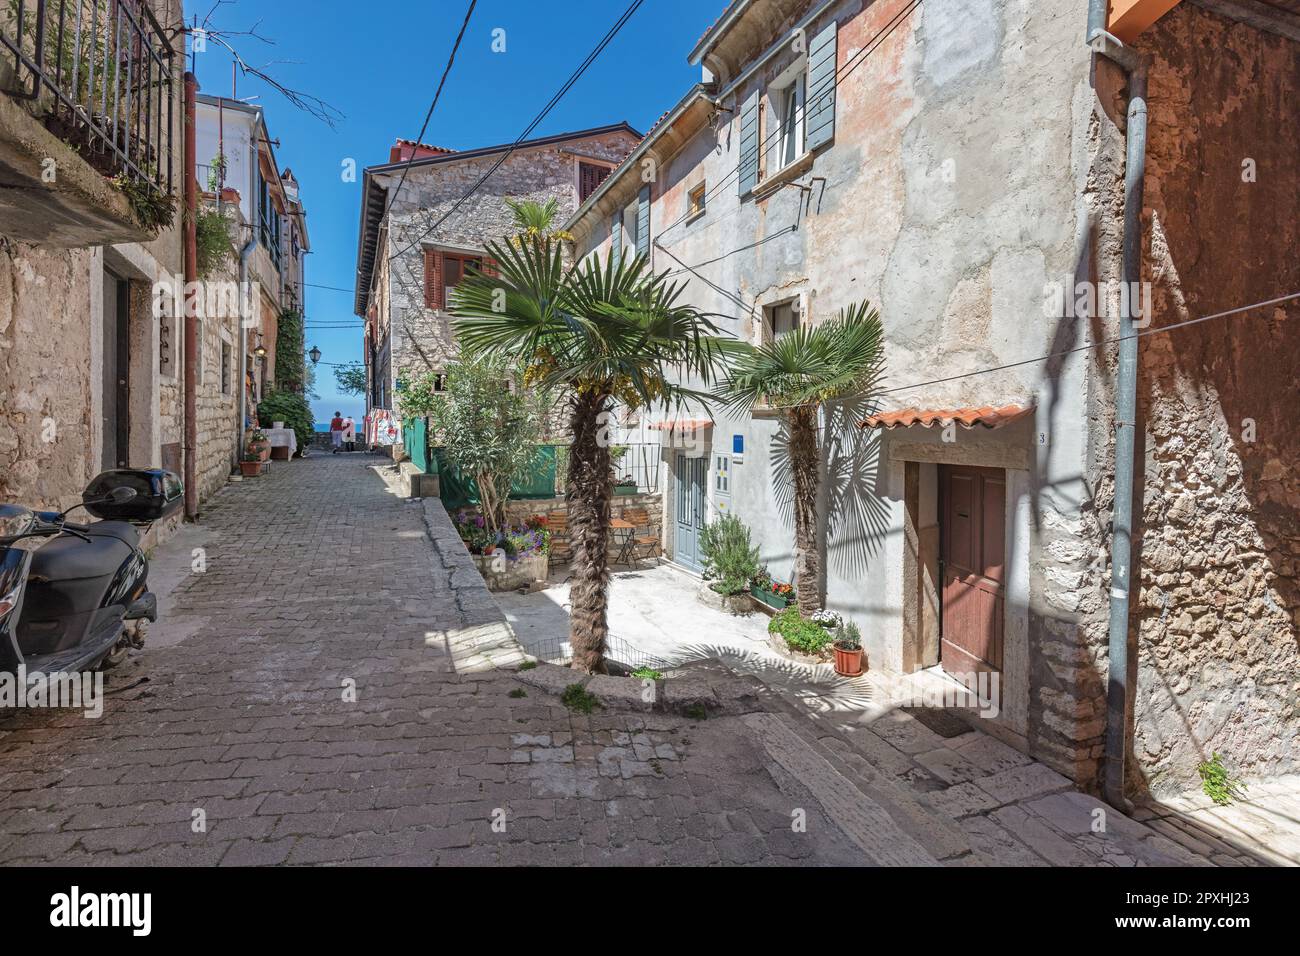 Ruelles étroites et bâtiments en pierre, maisons, magasins, bureaux, dans la vieille ville médiévale de Rovinj un port de pêche au bord de la mer Adriatique sur la péninsule Istrienne Banque D'Images